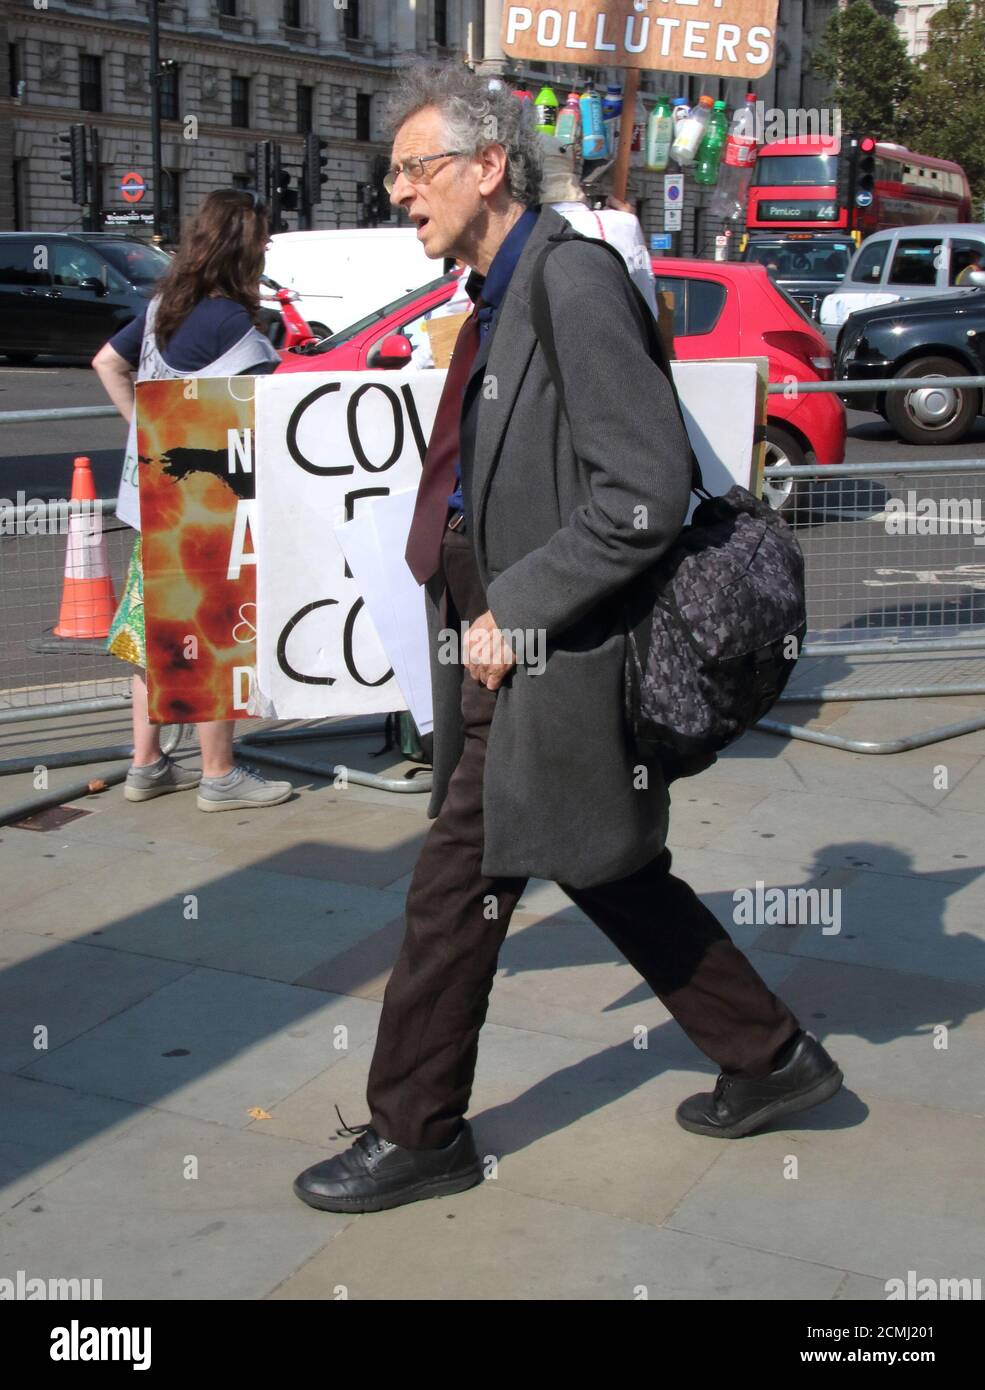 Londres, Royaume-Uni. 16 septembre 2020. Piers Corbyn se rend à Whitehall en tenant des pancartes sous son bras. L'activiste tacite Piers Corbyn - frère de l'ancien chef du travail Jeremy Bernard Corbyn a été vu en campagne en face de Downing Street, en parlant à une foule de sa théorie du complot Covid-19. Il est arrivé à Westminster avec plusieurs pancartes de campagne, après quoi il a rencontré d'autres activistes à Whitehall. L'astrophysicien s'est attaquant aux foules tout au long du confinement, alléguant que l'épidémie de Covid-19 avait été conçue pour contrôler la population. Crédit : SOPA Images Limited/Alamy Live News Banque D'Images